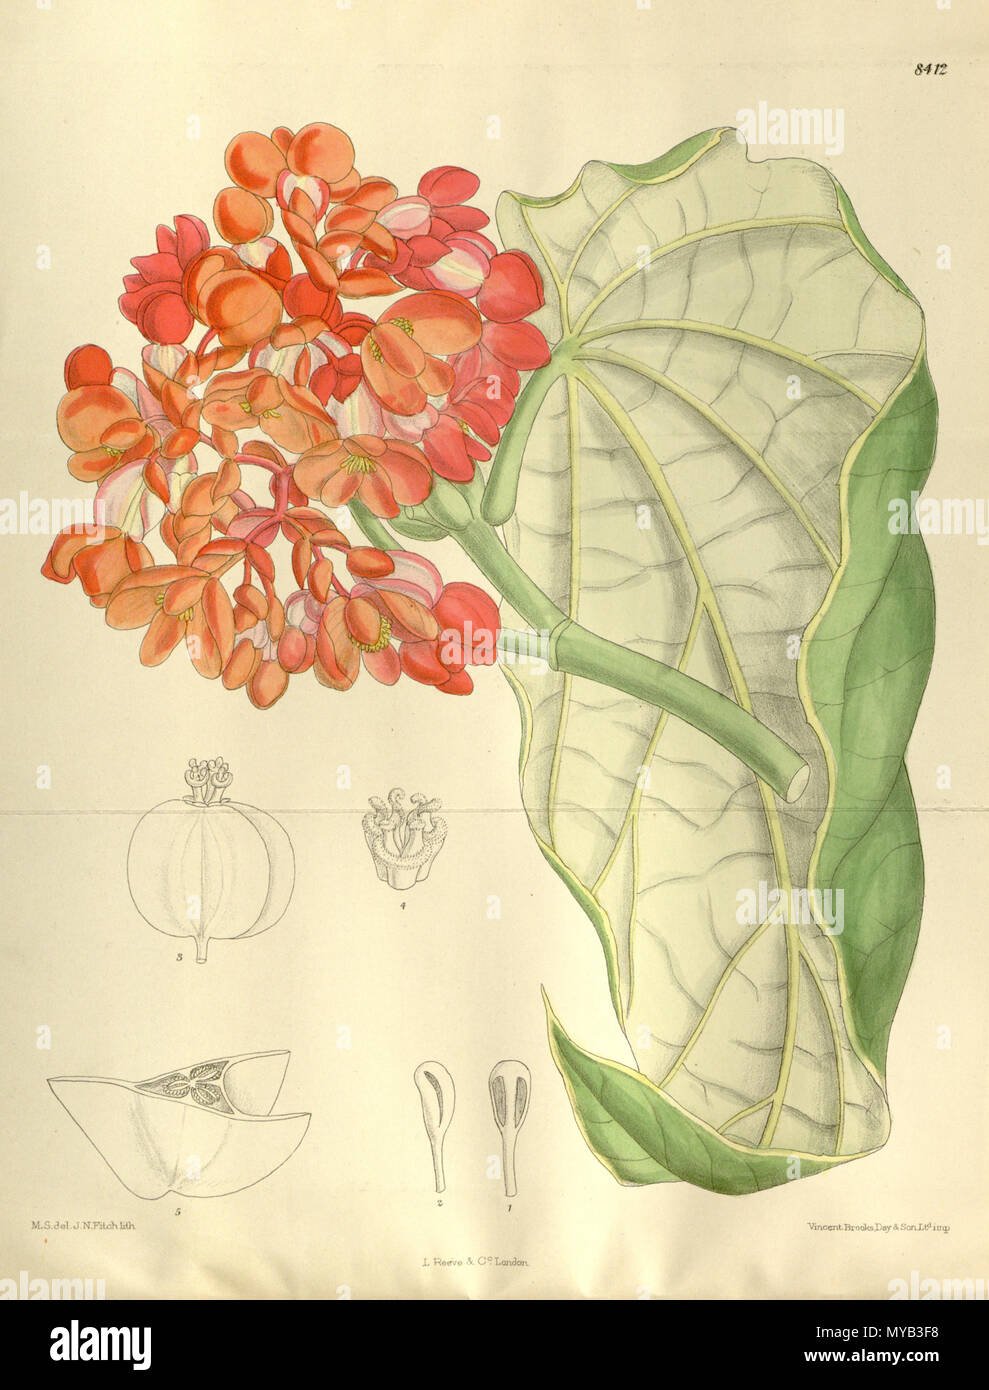 . Begonia dichroa (= Begonia maculata), Begoniaceae . 1912. M.S. del, J.N.Fitch, lith. 68 Begonia dichroa 138-8412 Stock Photo